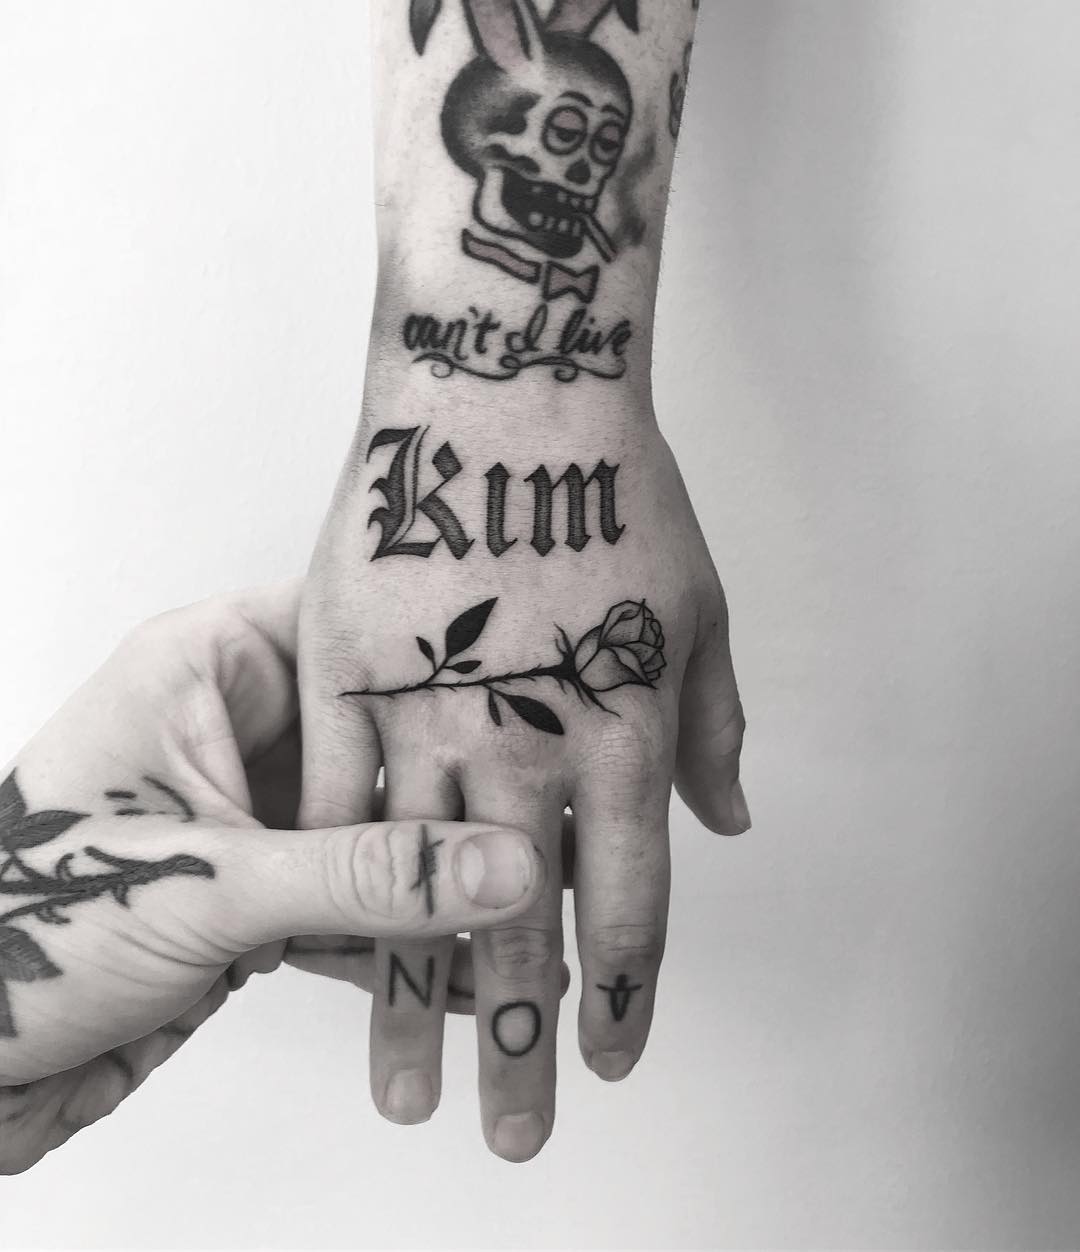 Kim tattoo by tattooist weepandforfeit